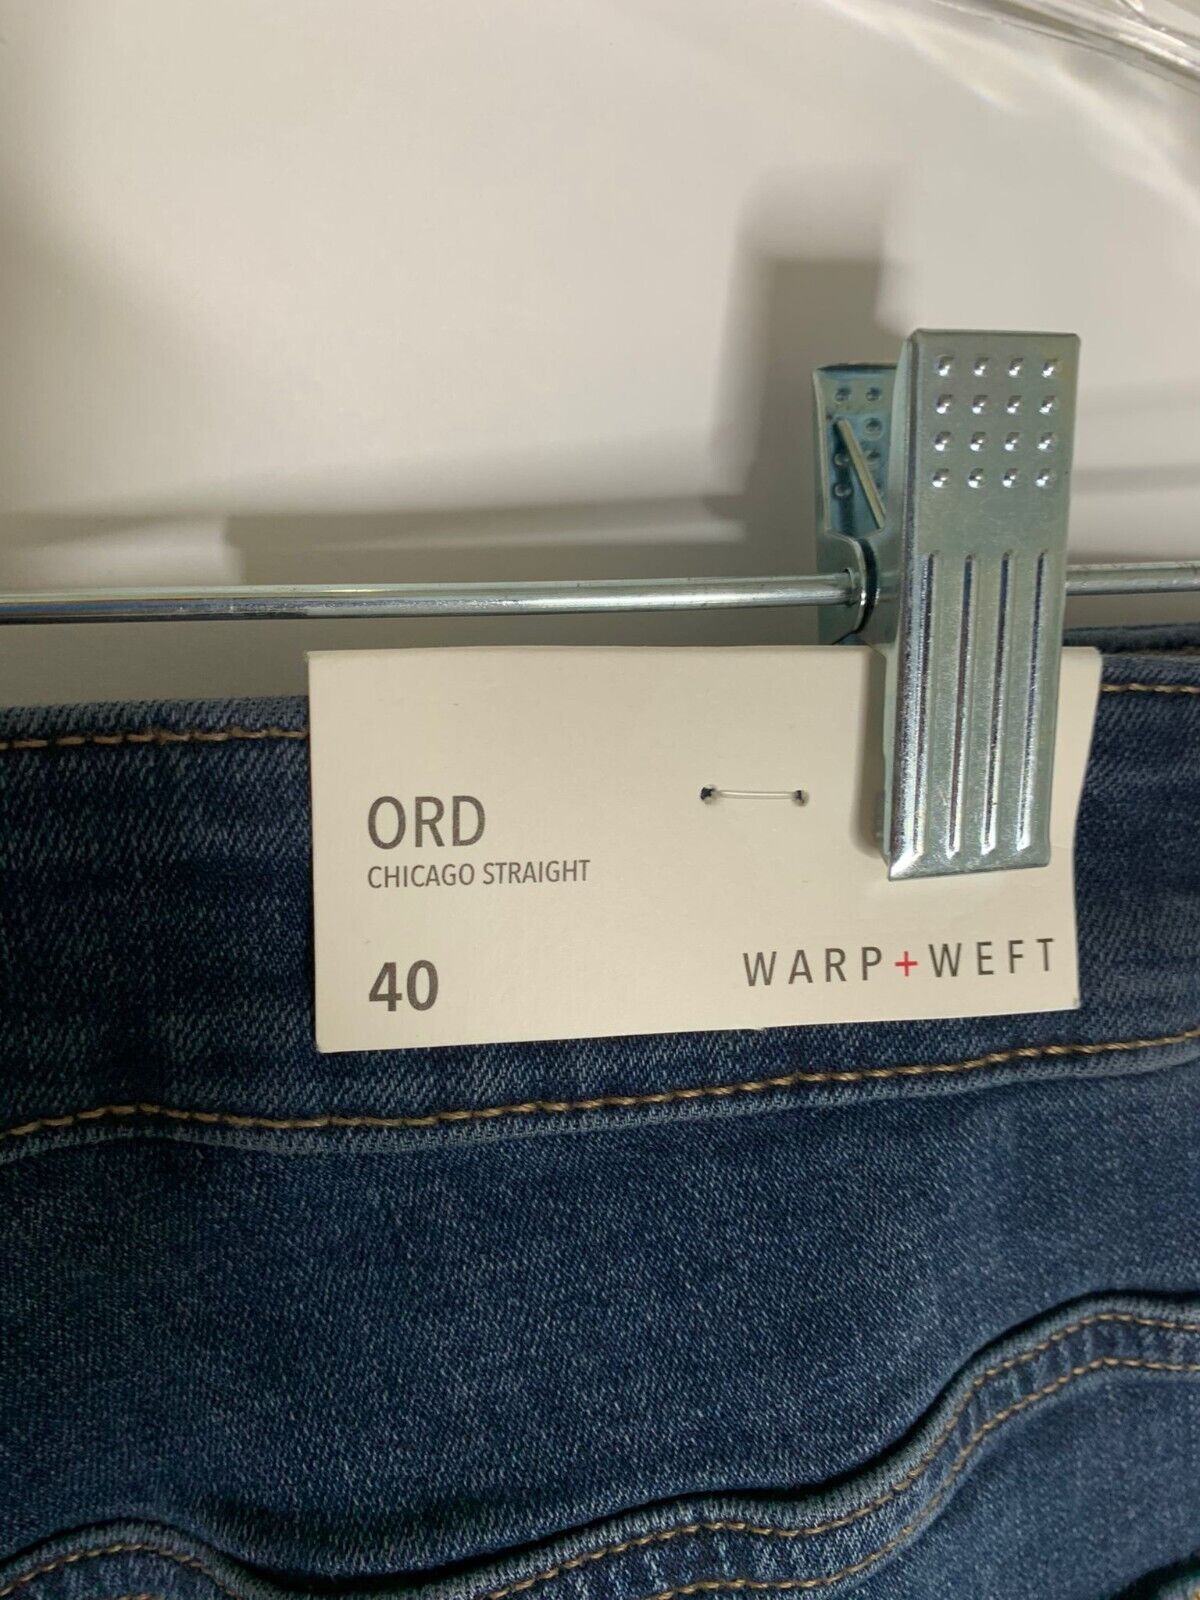 Warp + Weft Mens 40x30 38x29 Ord Chicago Straight Jeans Indigo Dark Wash